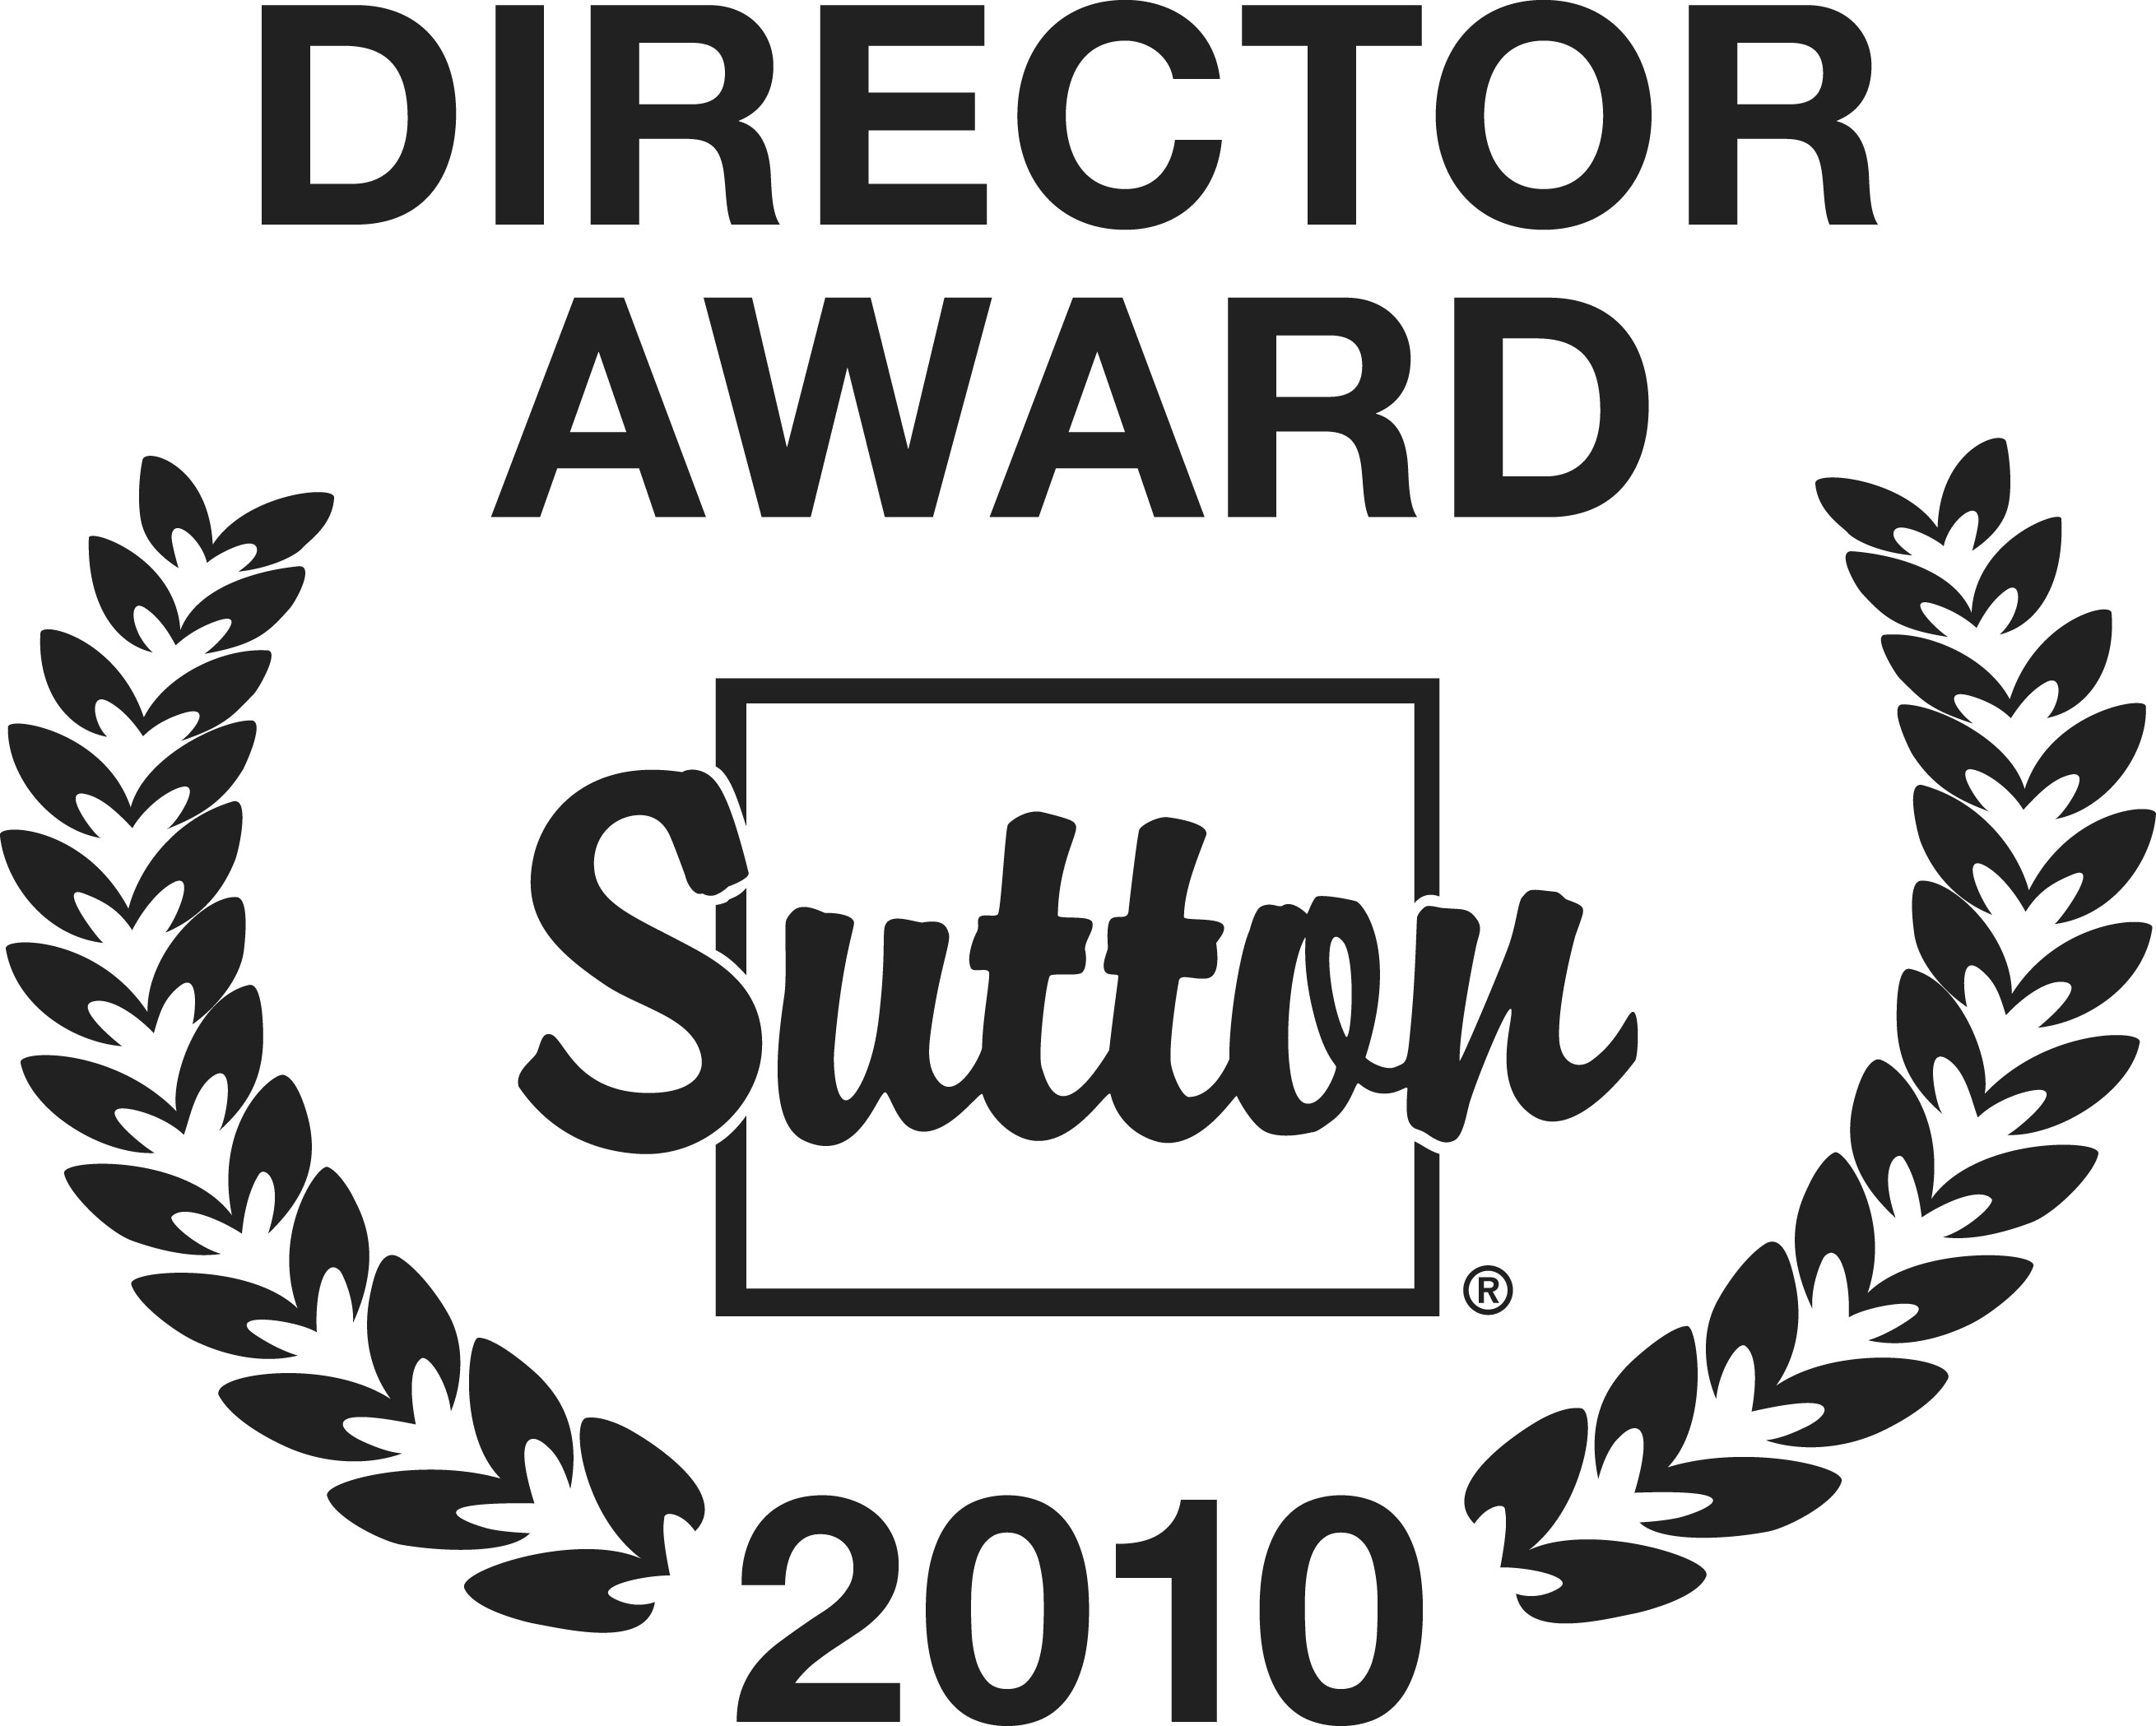 Director Award 2010